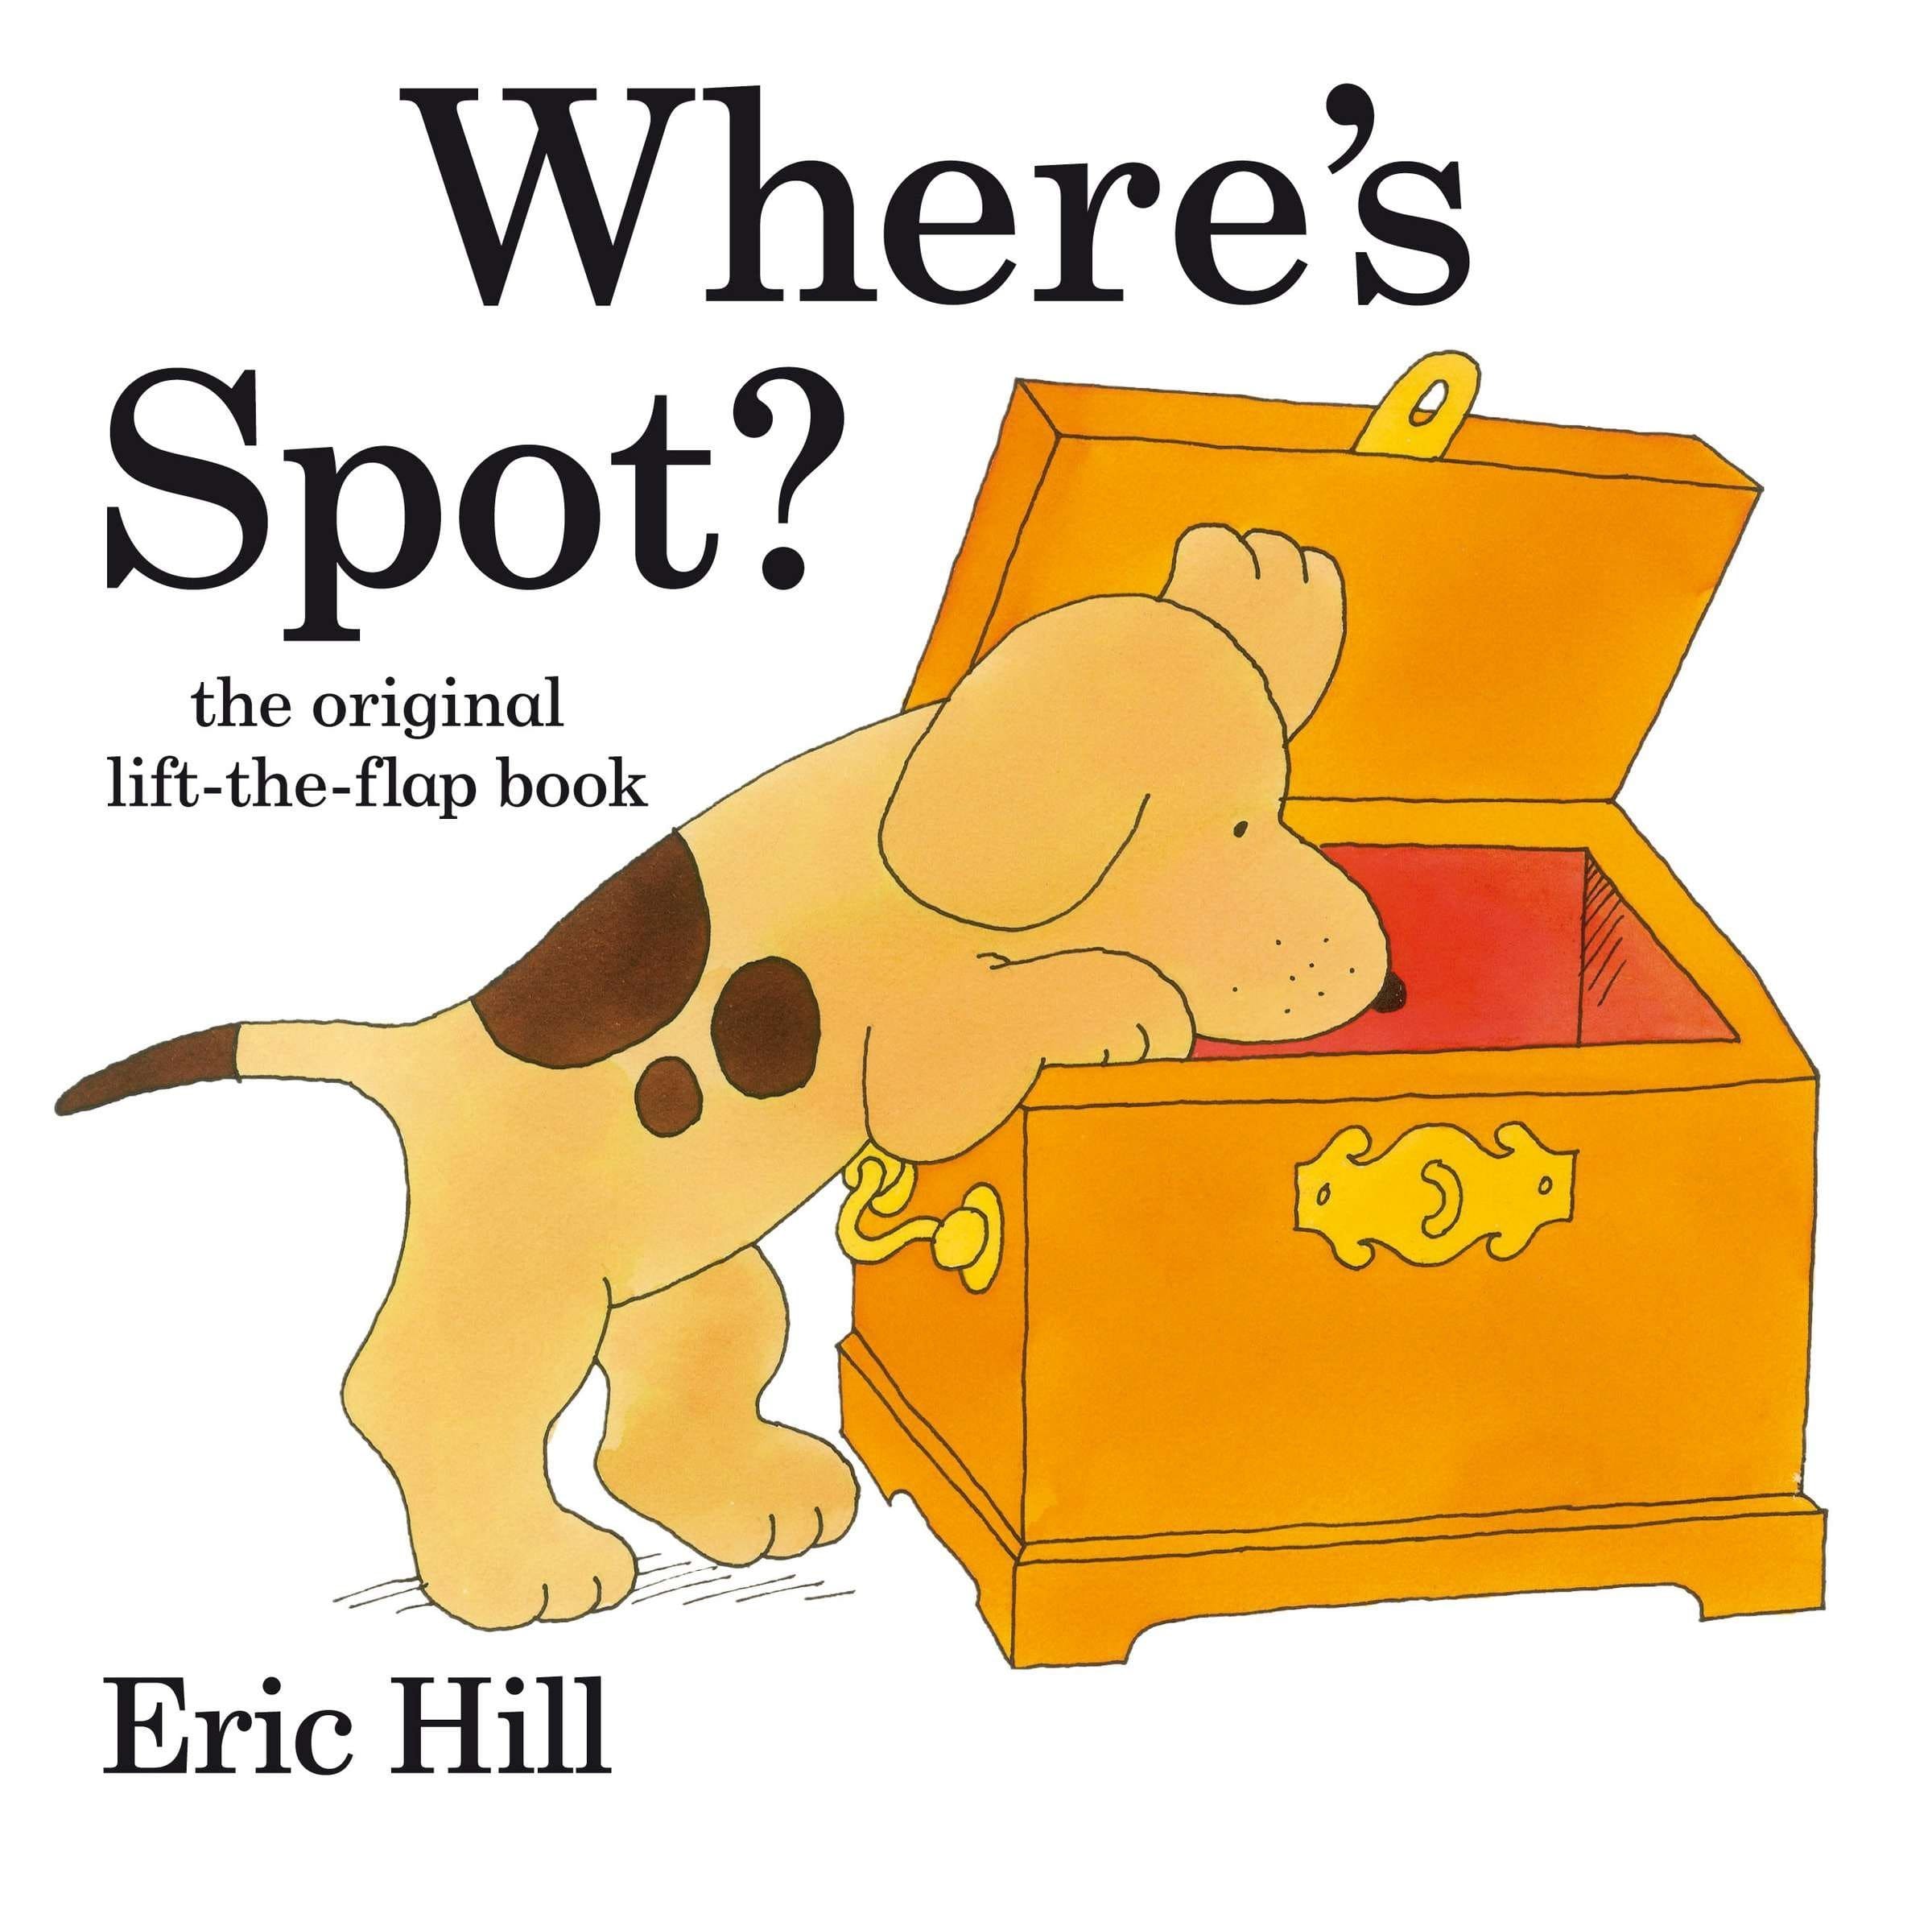 IMG : Where's Spot